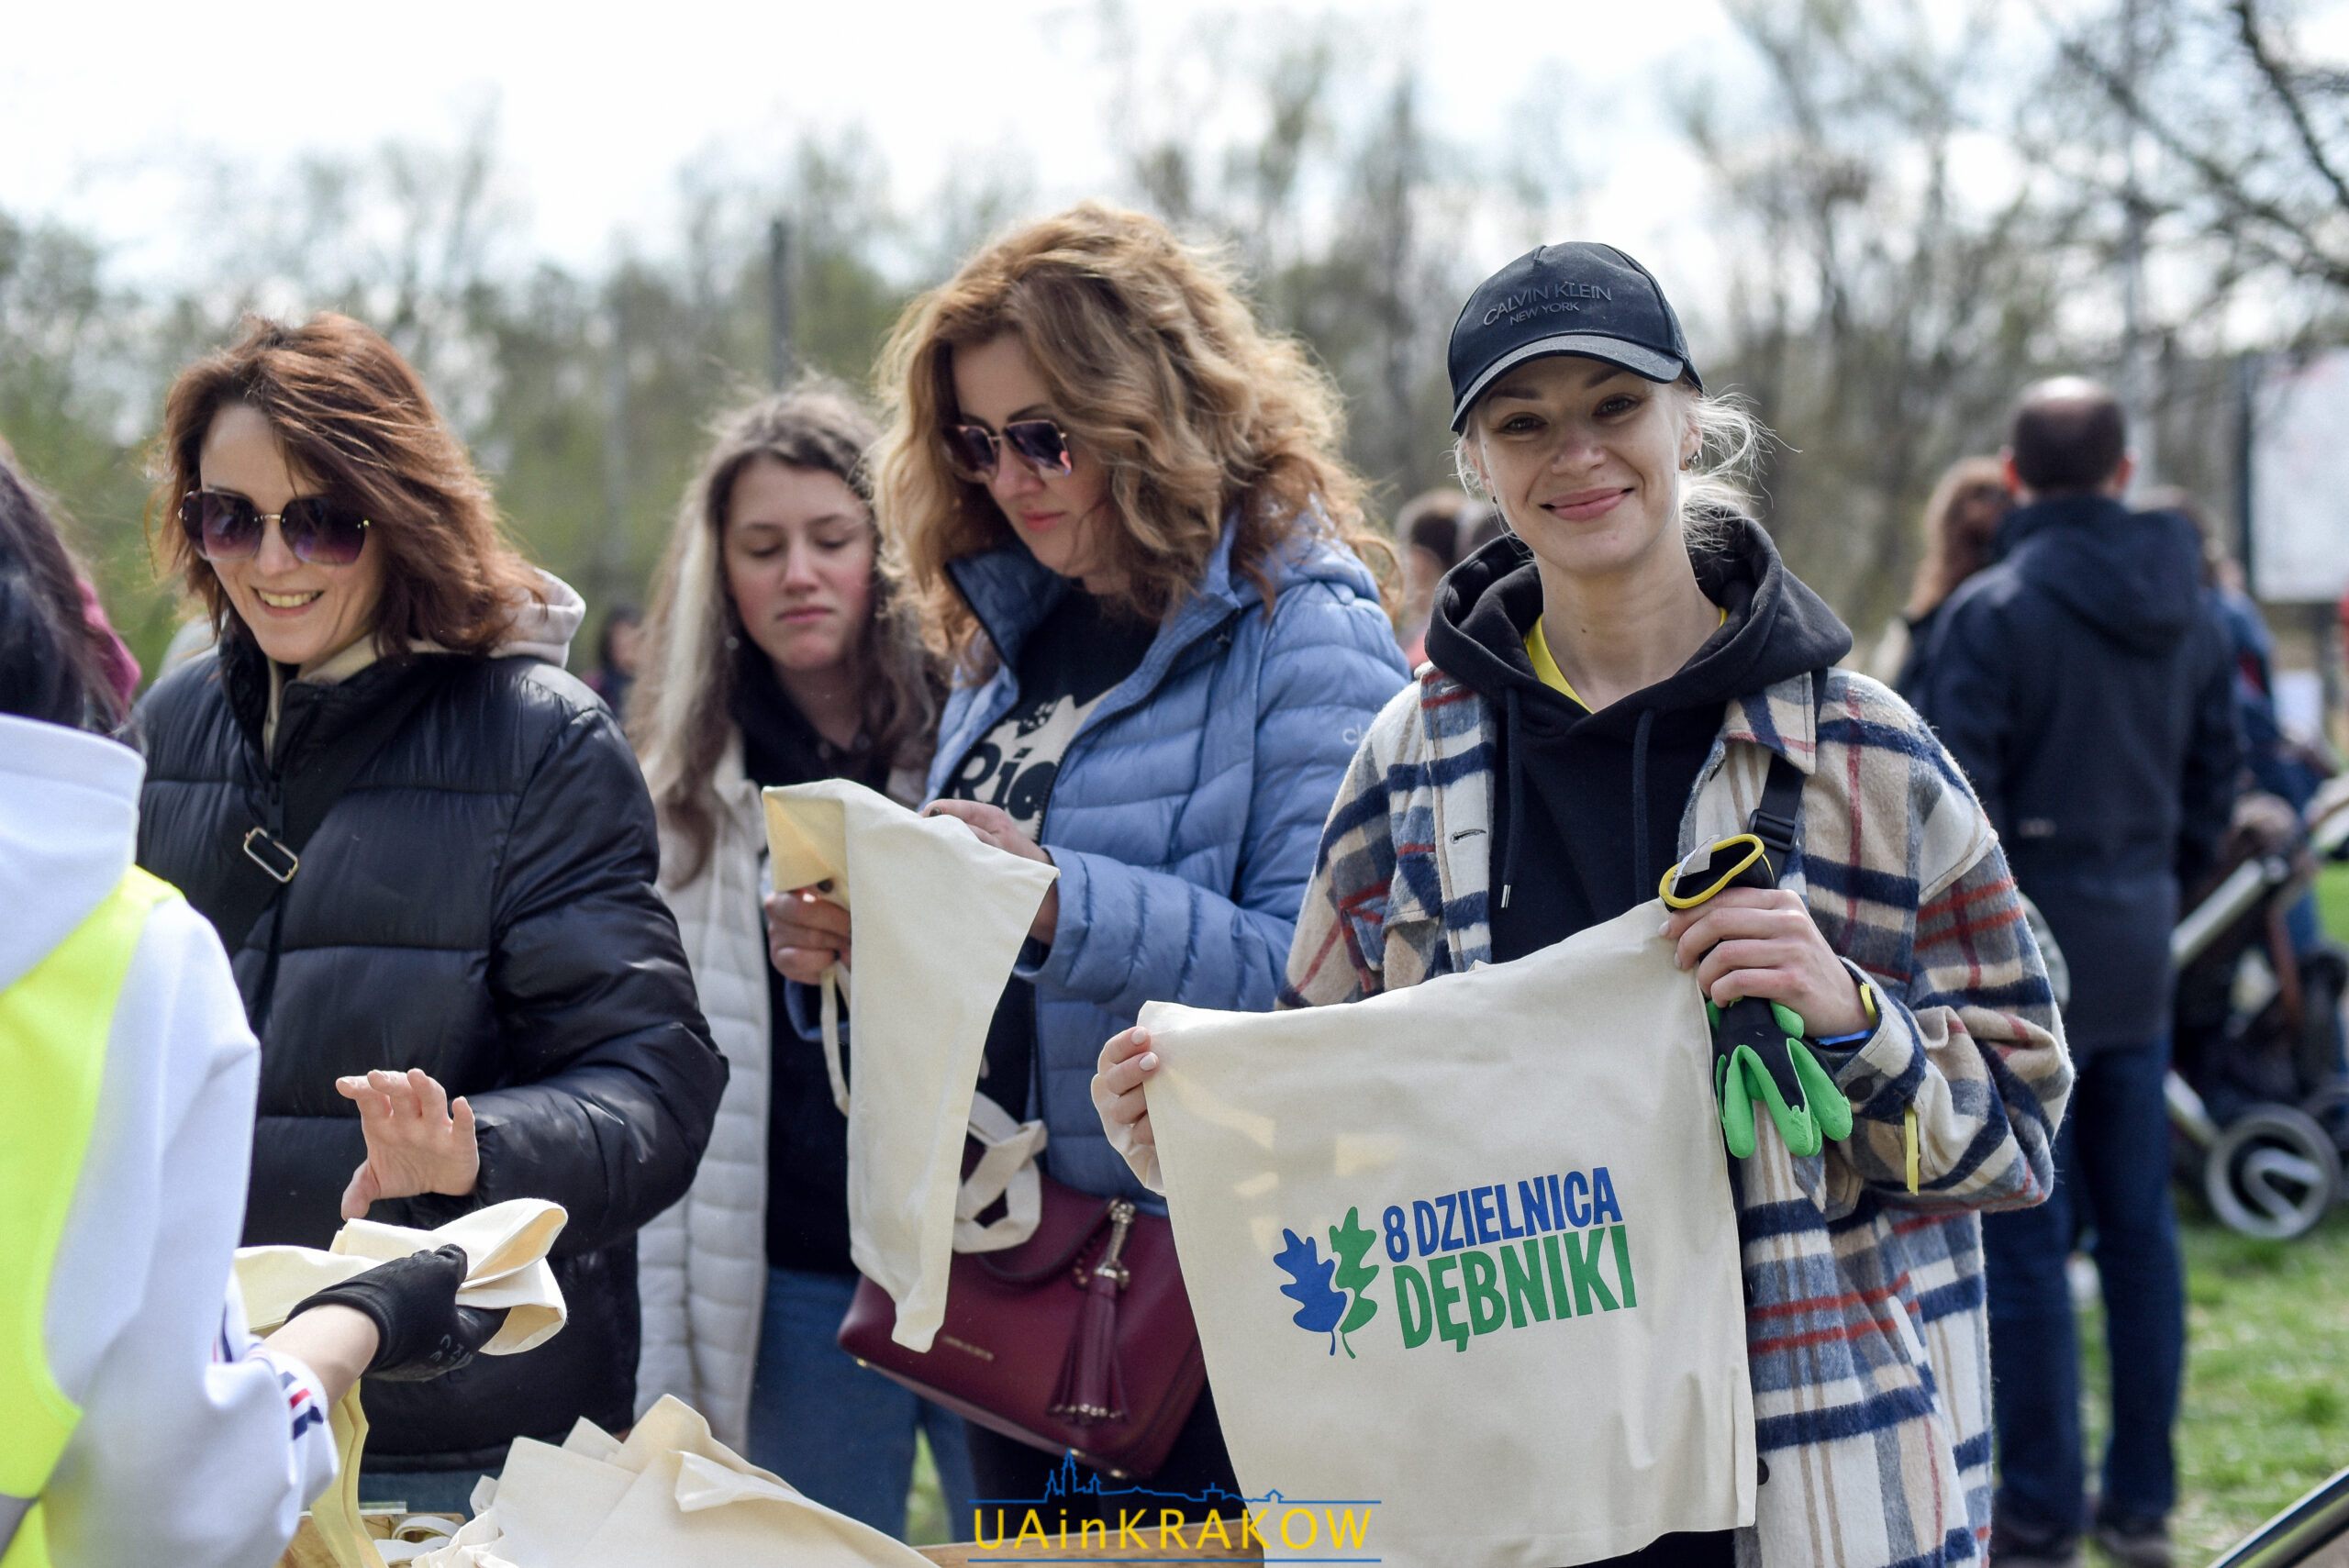 Суботник як жест подяки: переселенці з України прибирали парк у Кракові [ФОТО] dsc 1660 scaled